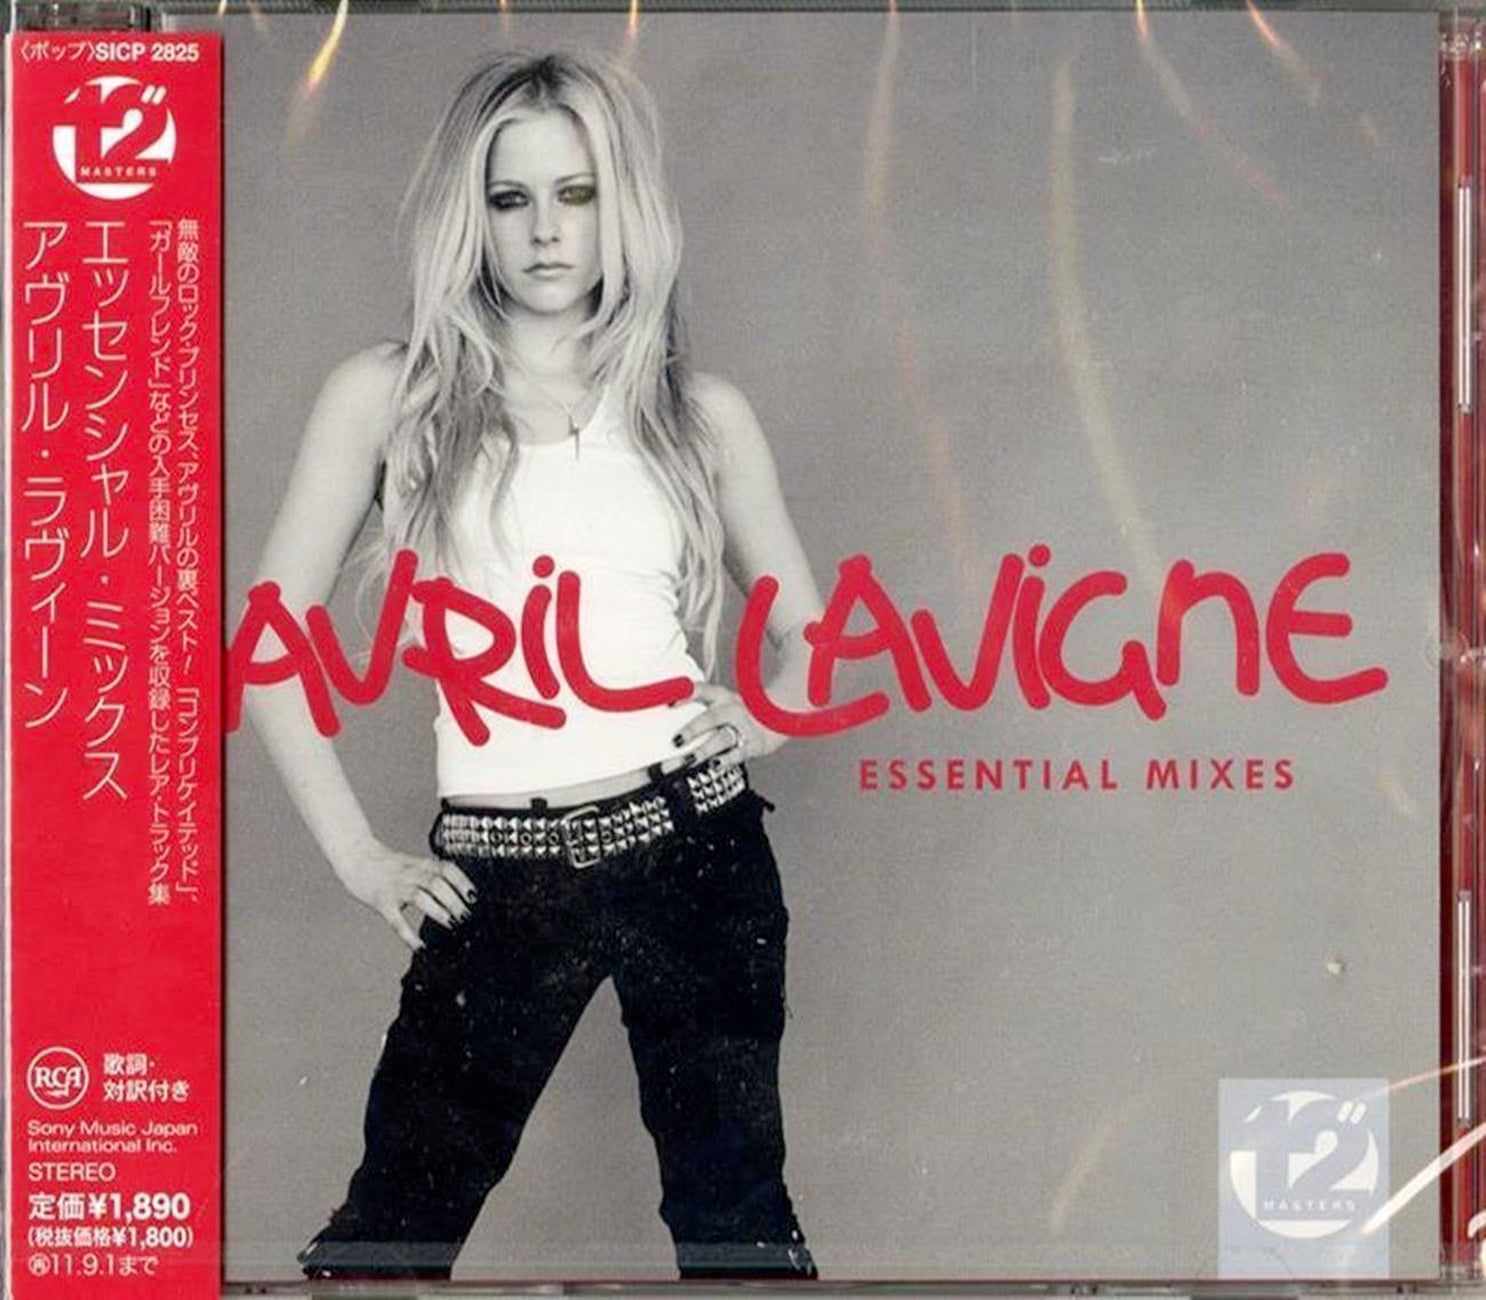 Avril Lavigne - Essential Mix - Japan CD – CDs Vinyl Japan Store